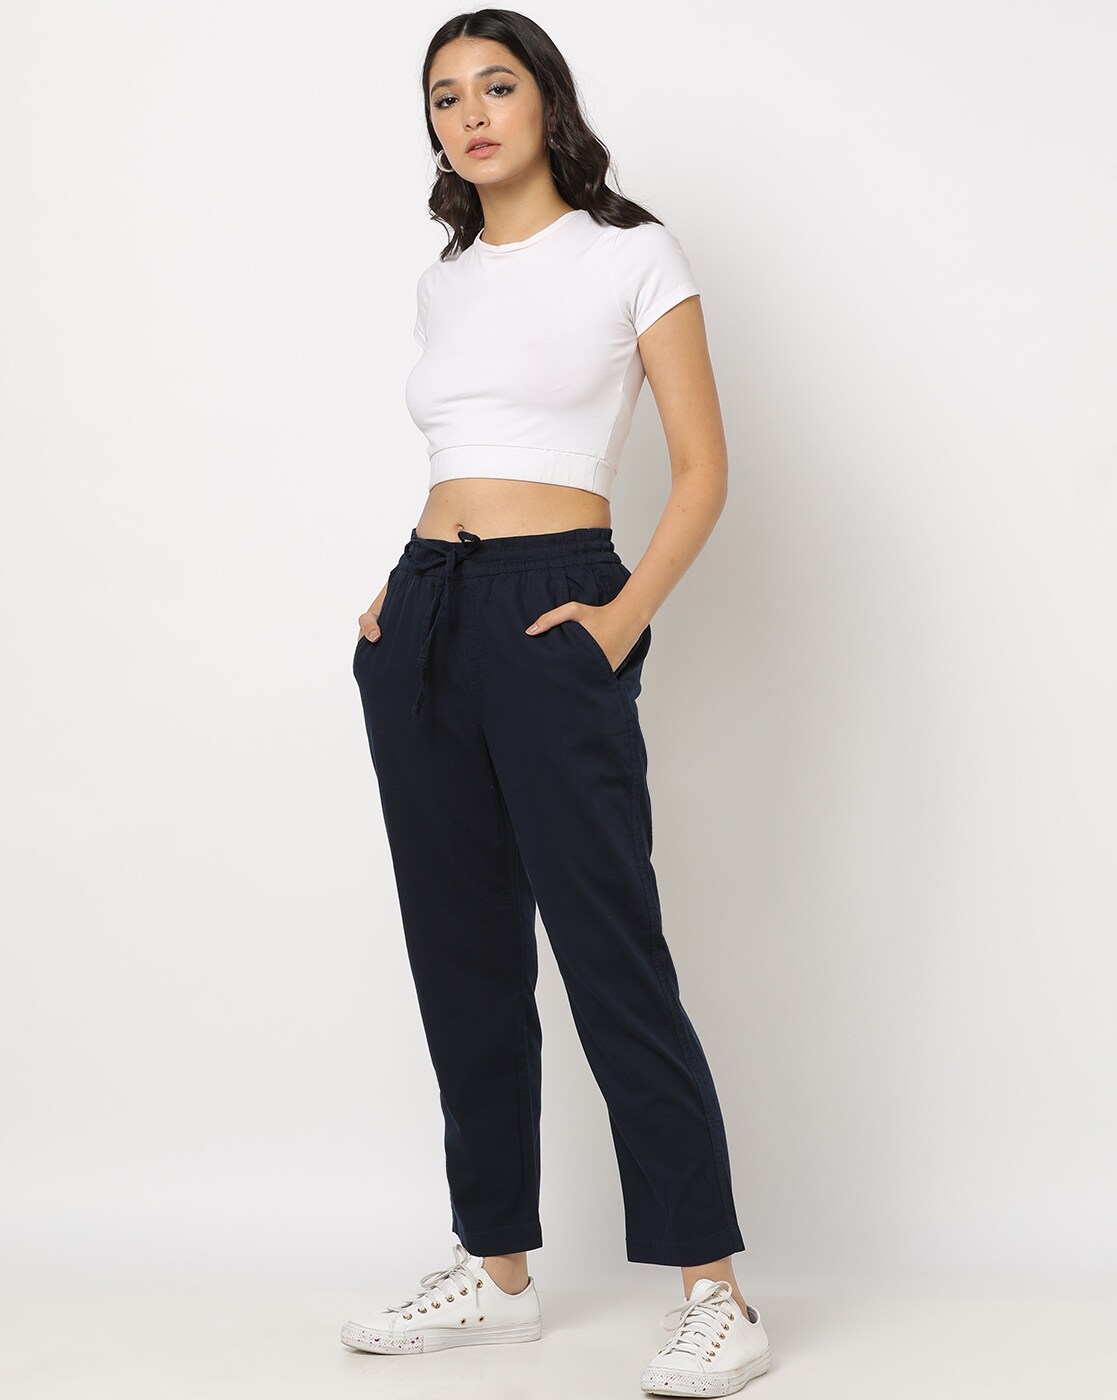 Buy Green Trousers  Pants for Women by GAP Online  Ajiocom